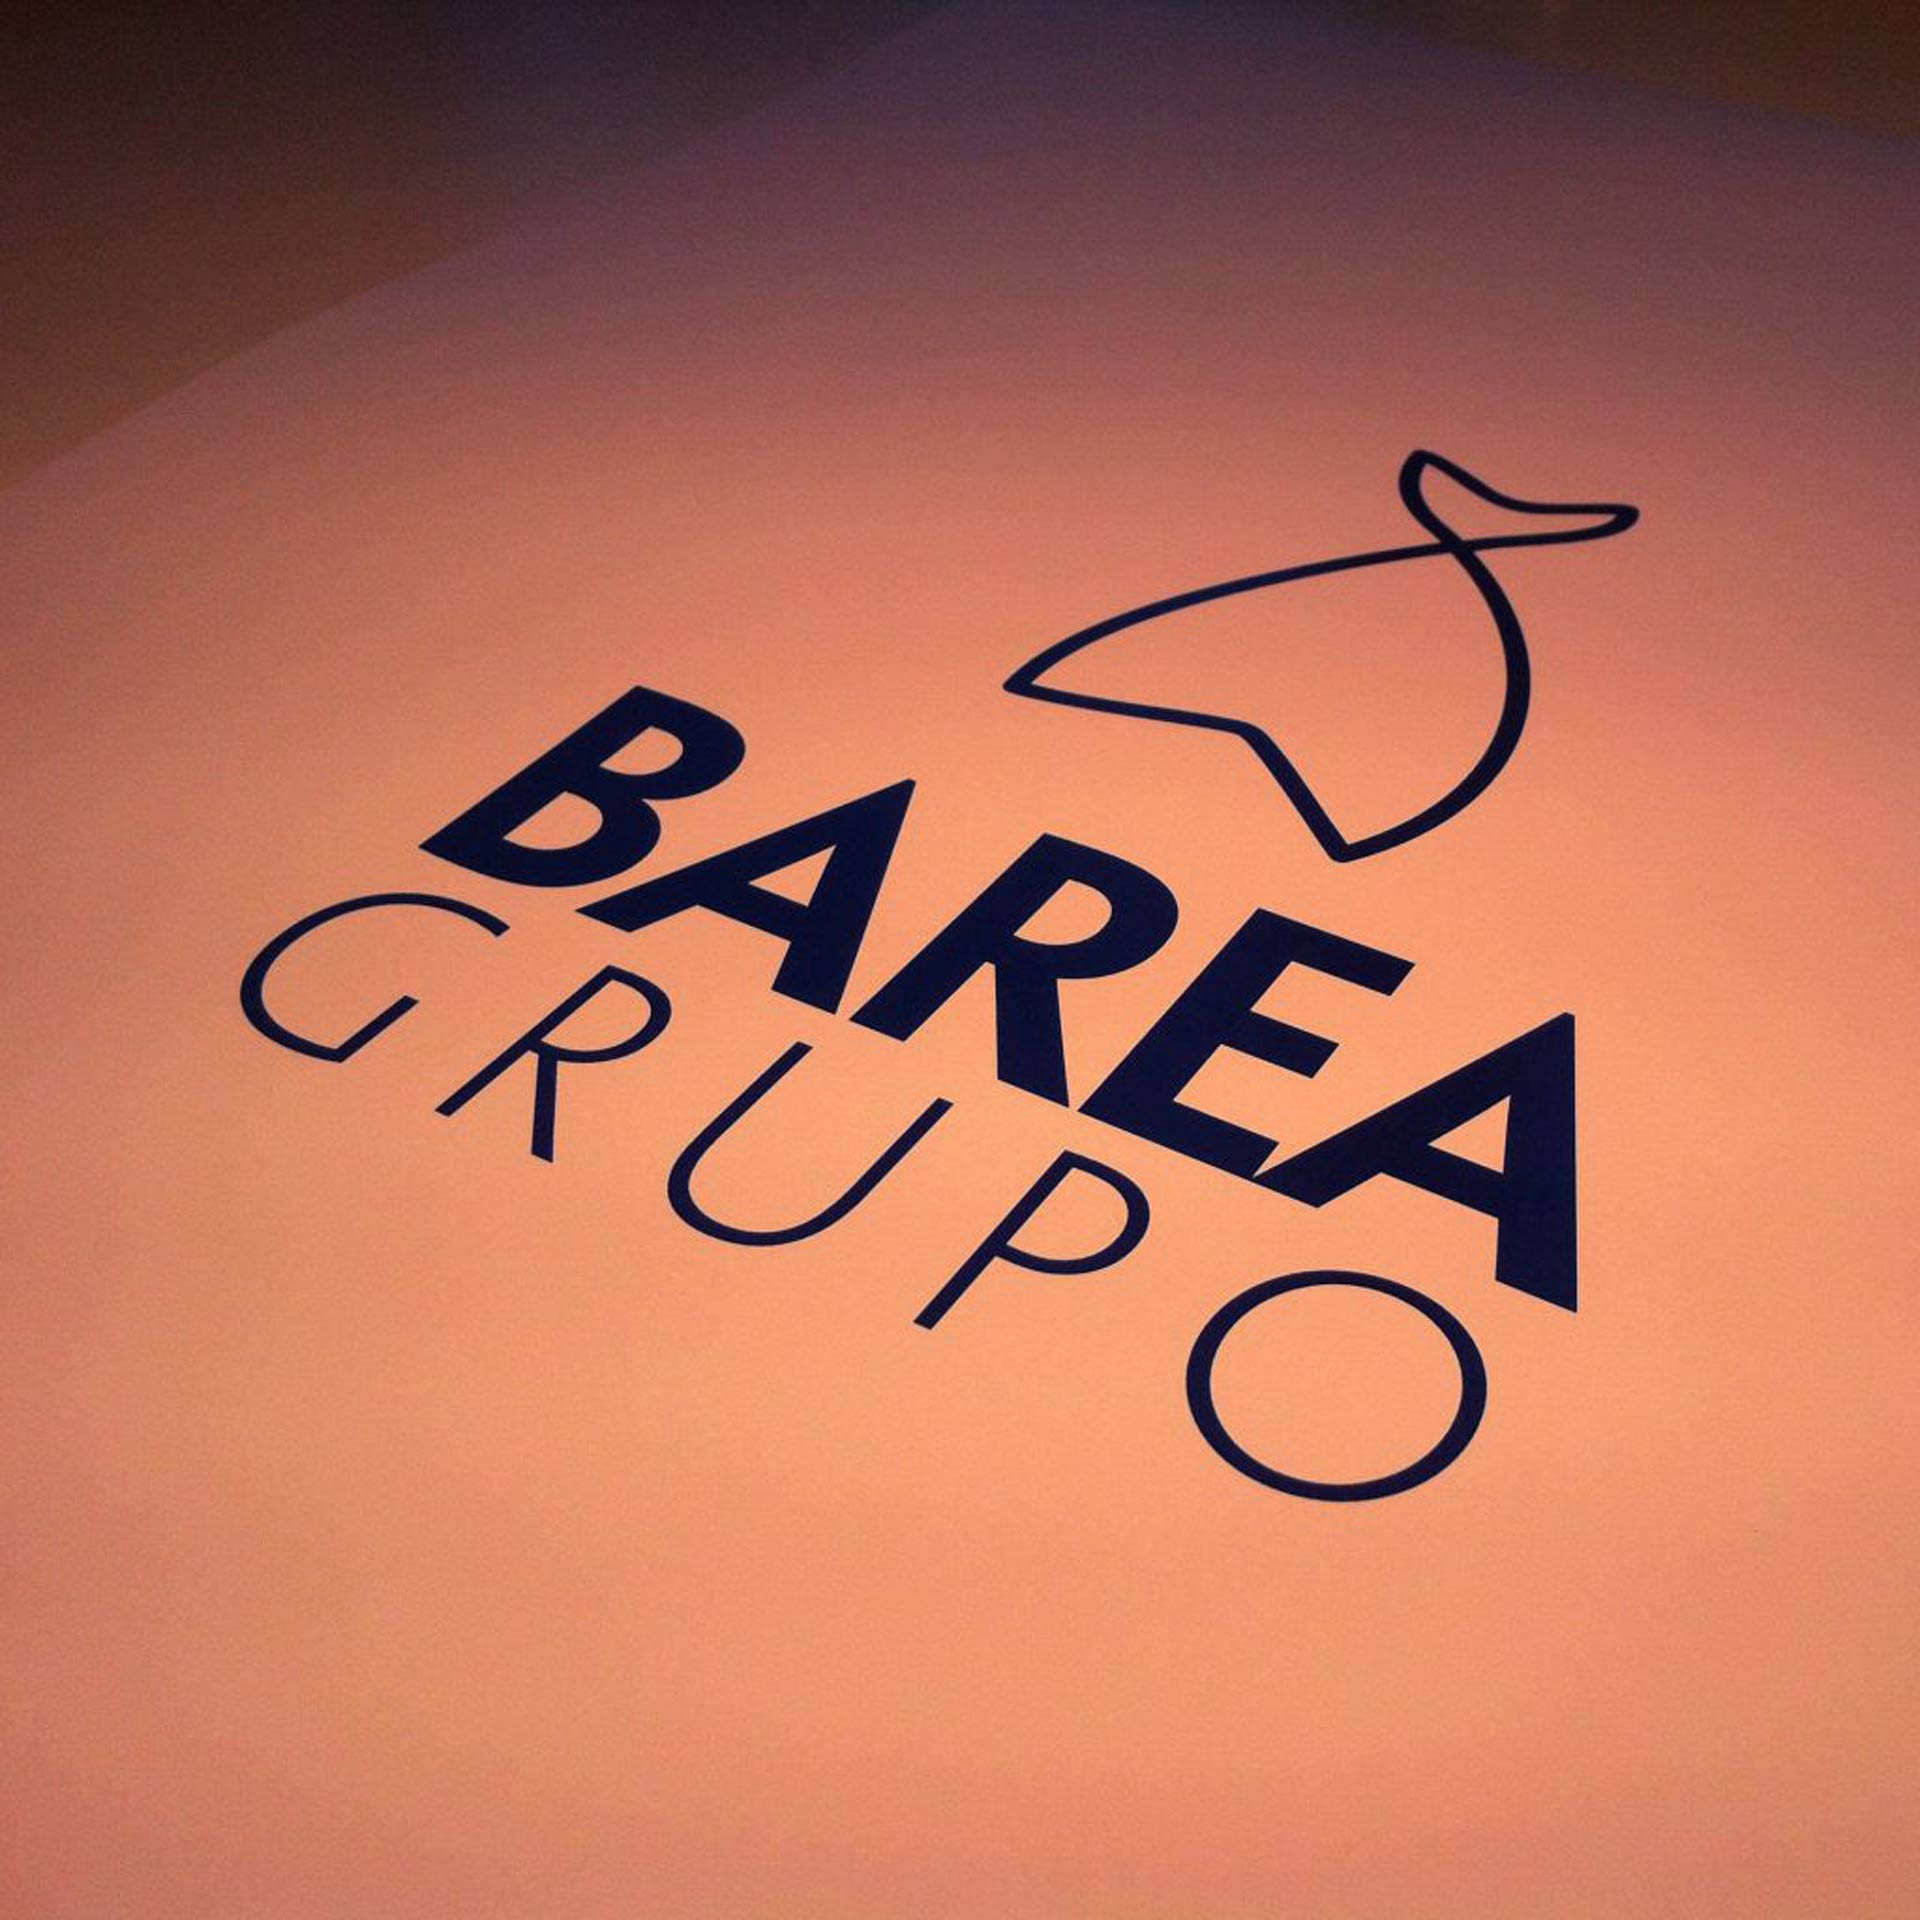 Branding, creatividad gráfica, diseño editorial y packaging Barea grupo